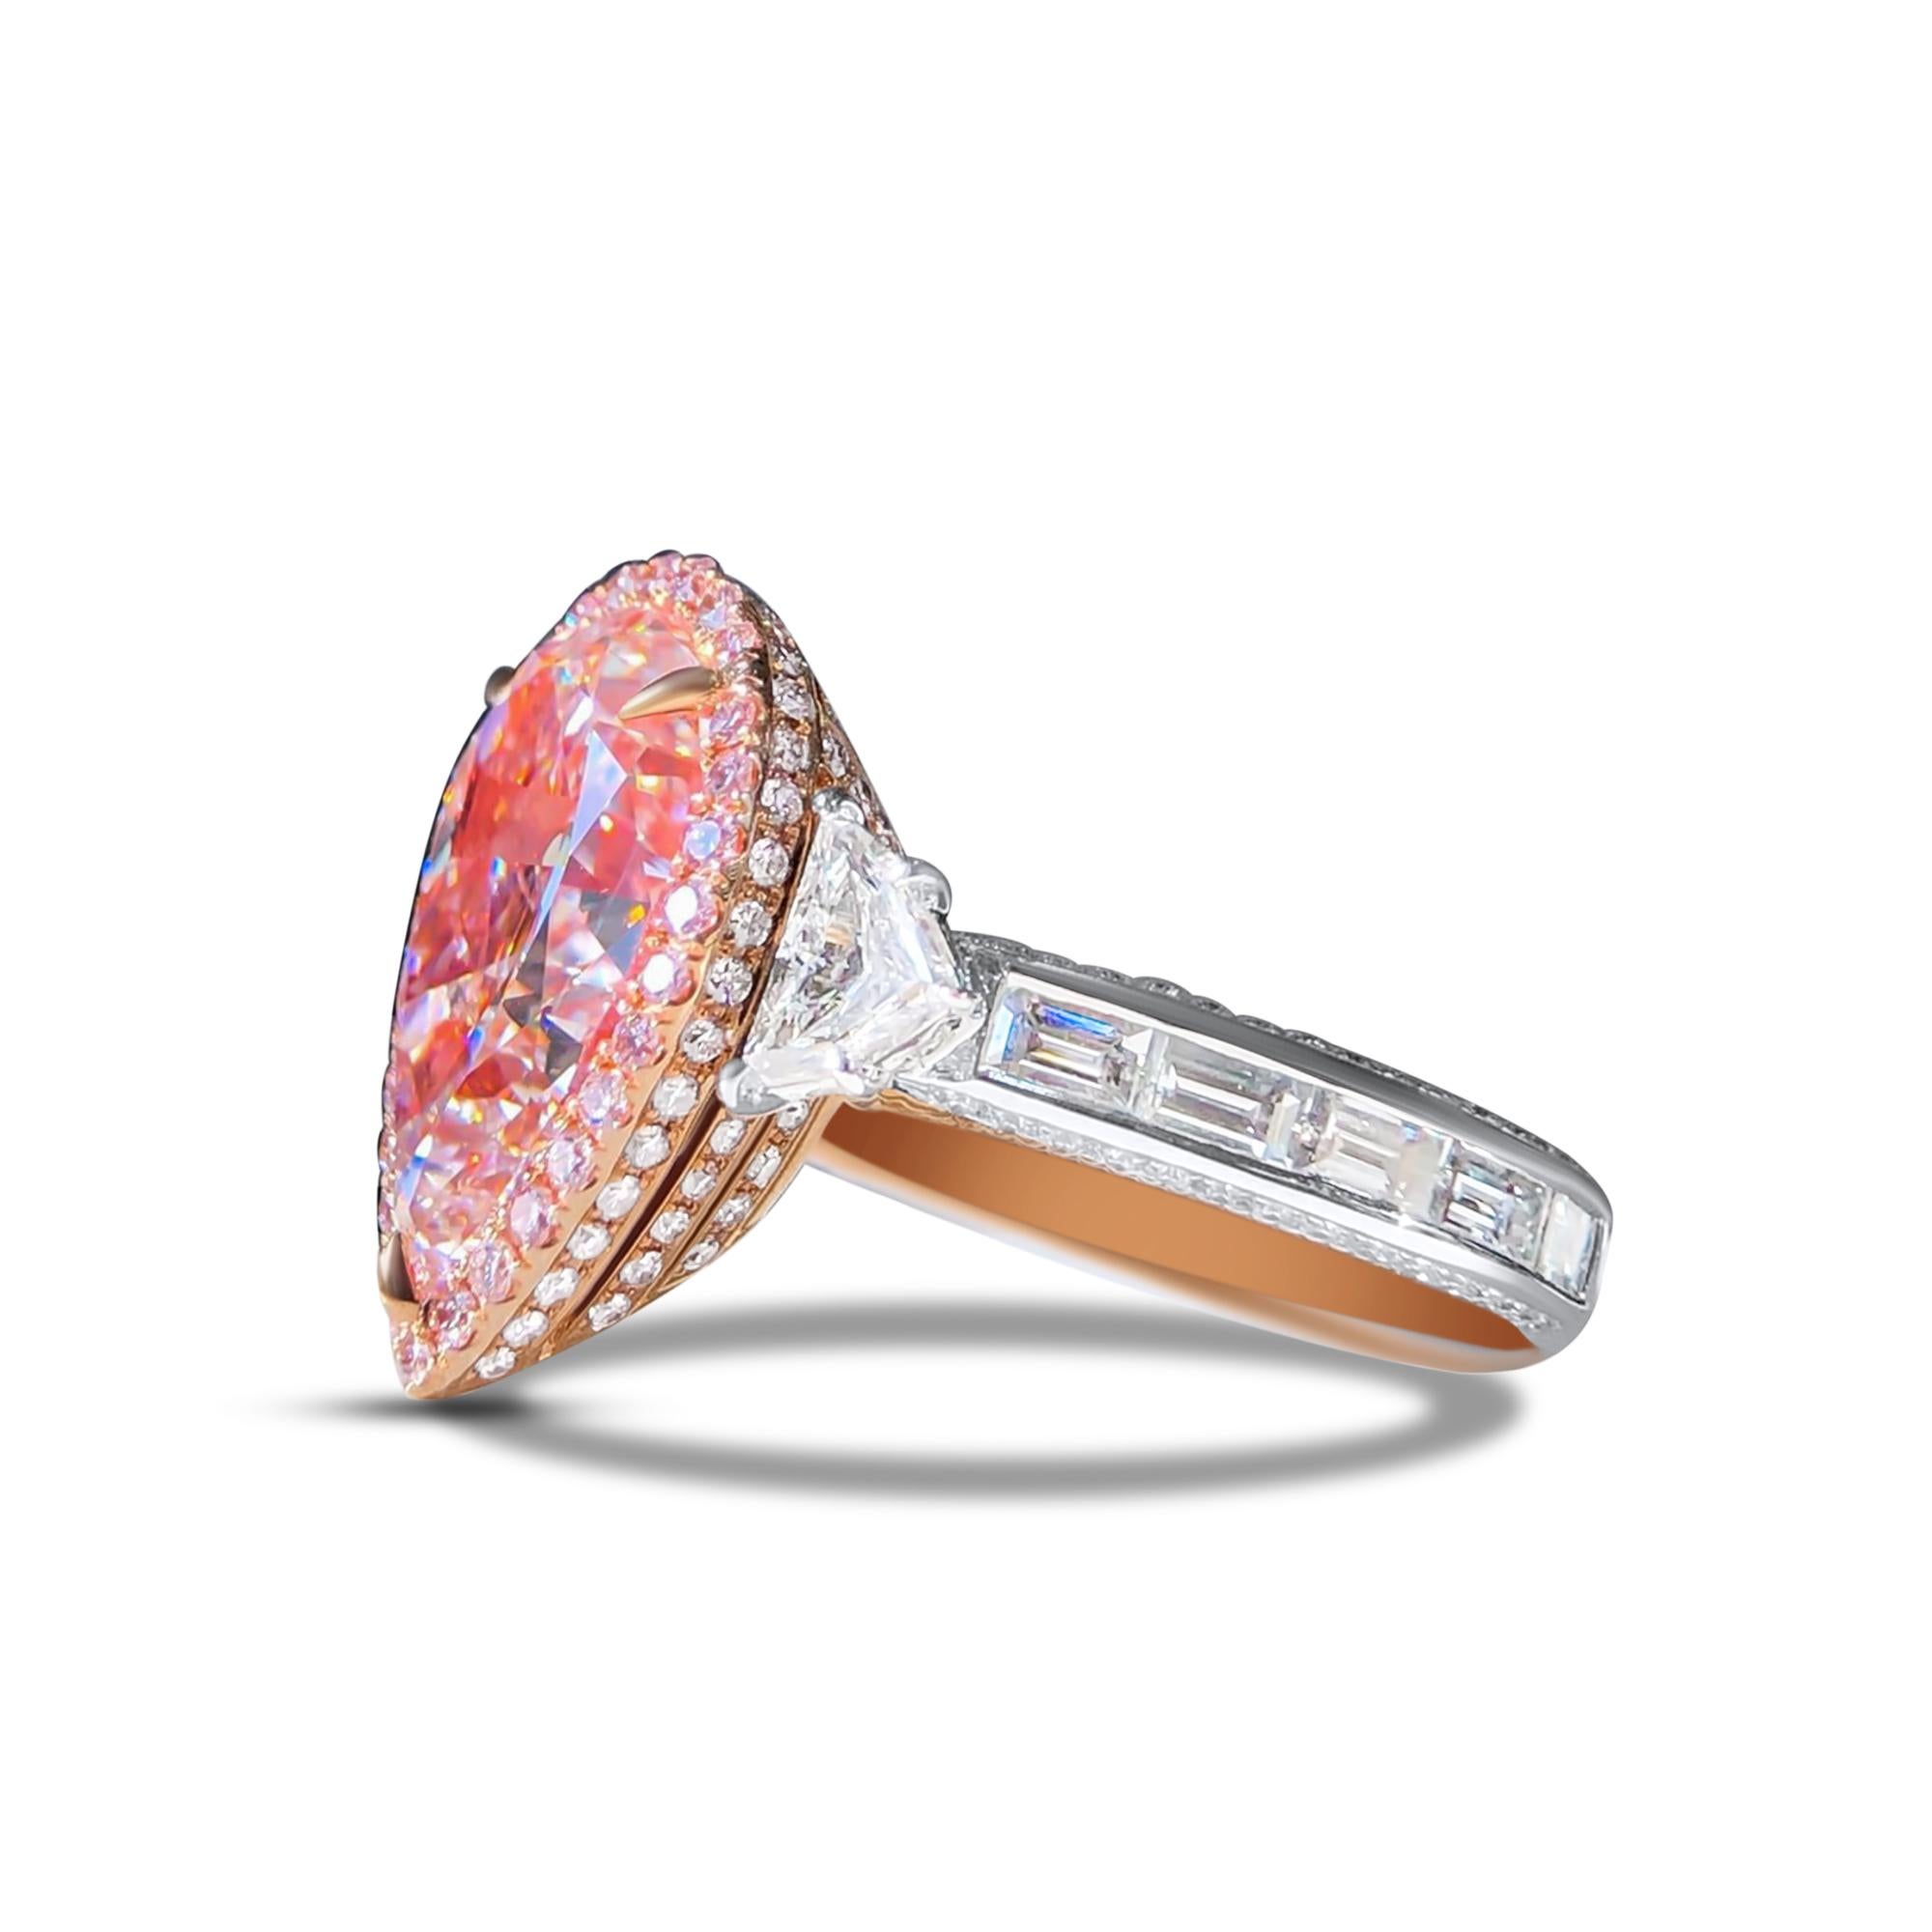 Wir laden Sie ein, diesen prächtigen, äußerst seltenen Sammlerring zu entdecken, der mit einem wunderschönen 7,58 Karat GIA-zertifizierten, lupenreinen Rosé-Diamanten im Birnenschliff besetzt ist, der von einem Halo aus farblosen Baguette- und